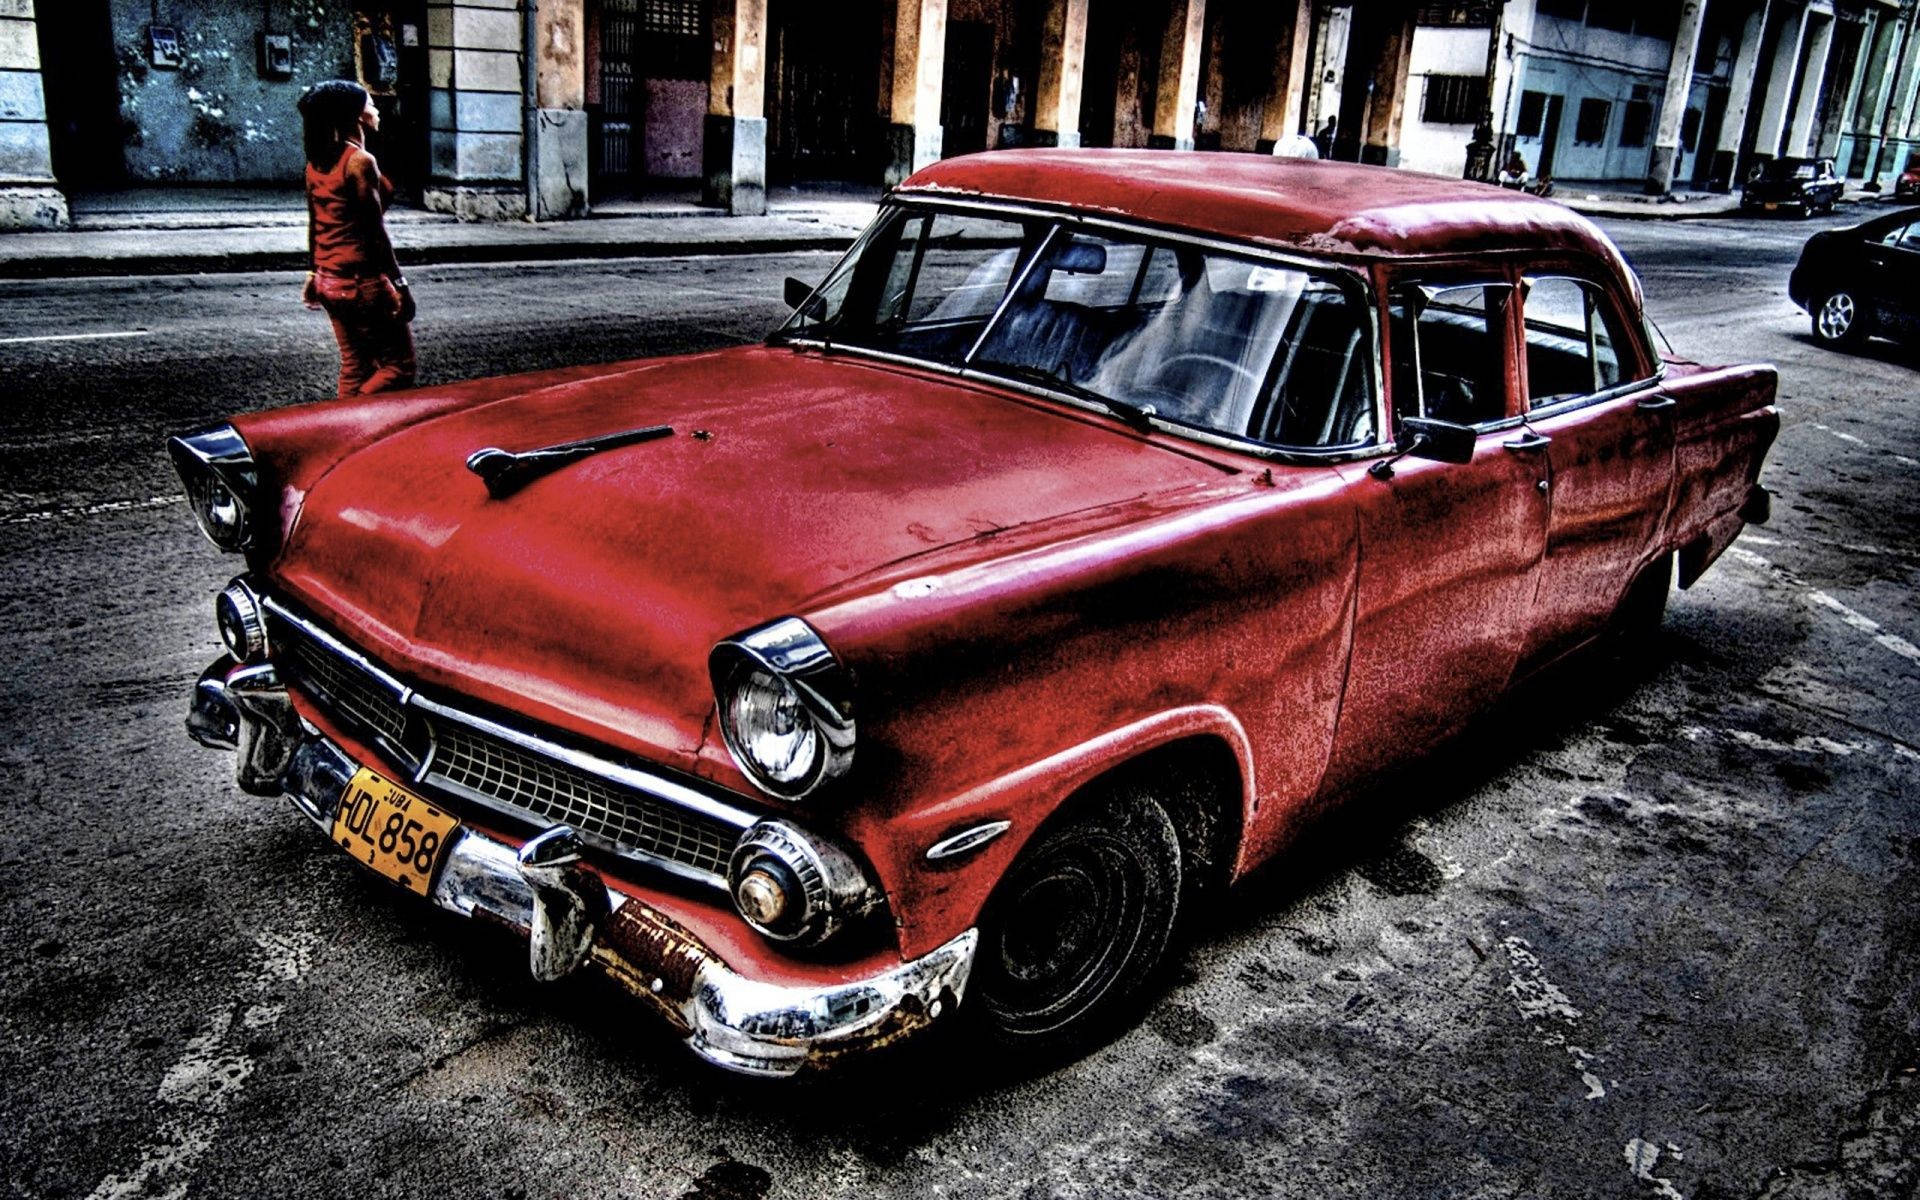 Vintage Red Nice Car